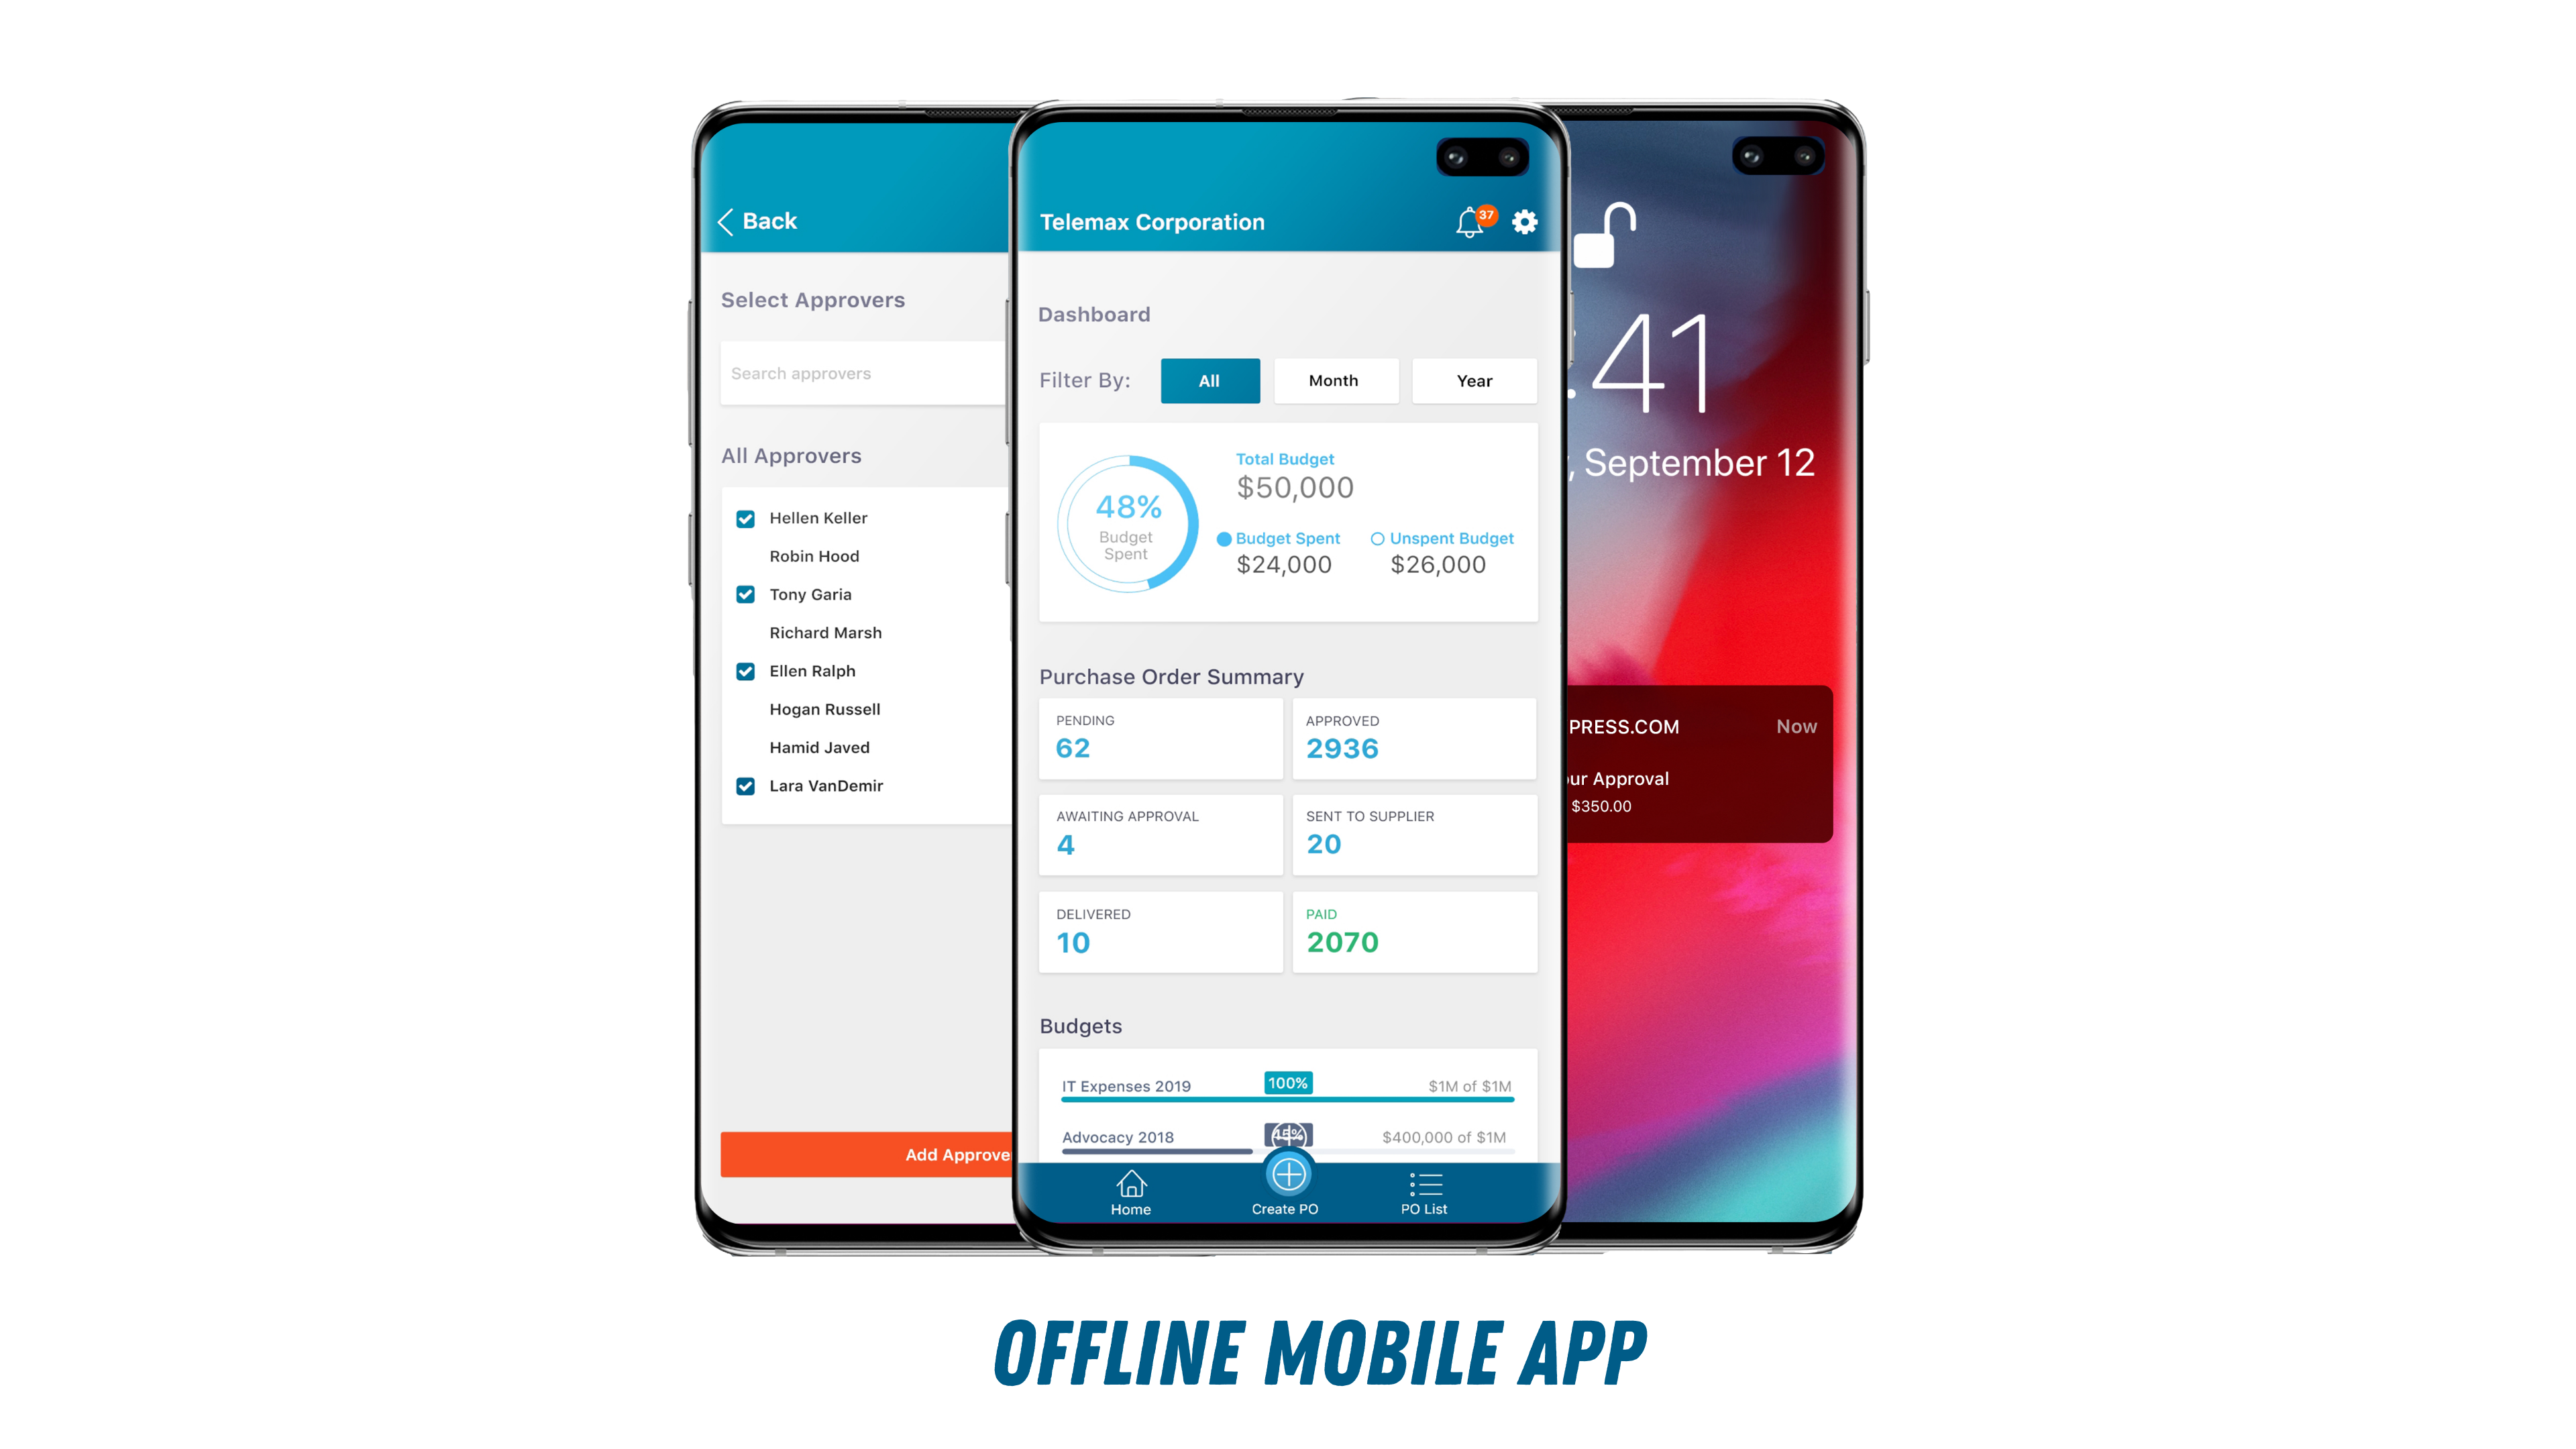 ProcurementExpress.com Software - Offline Mobile App